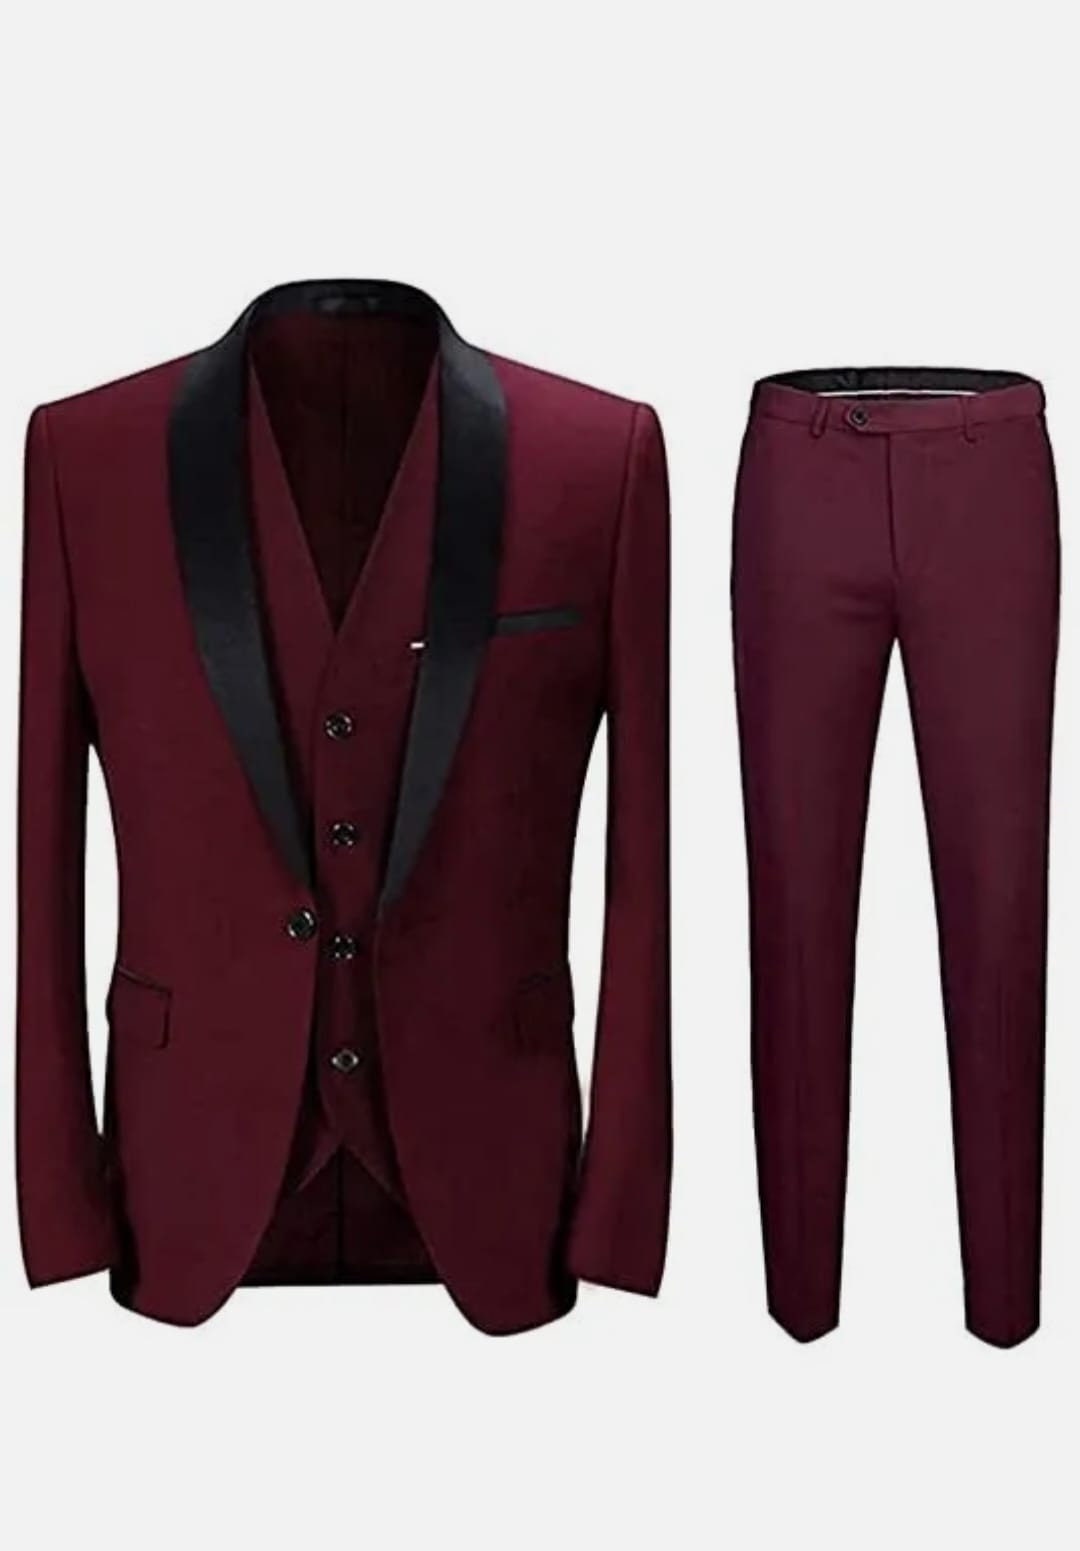 Burgundy Suit for Men Maroon 3 Piece Wedding Tuxedo Jacket Groomsmen ...